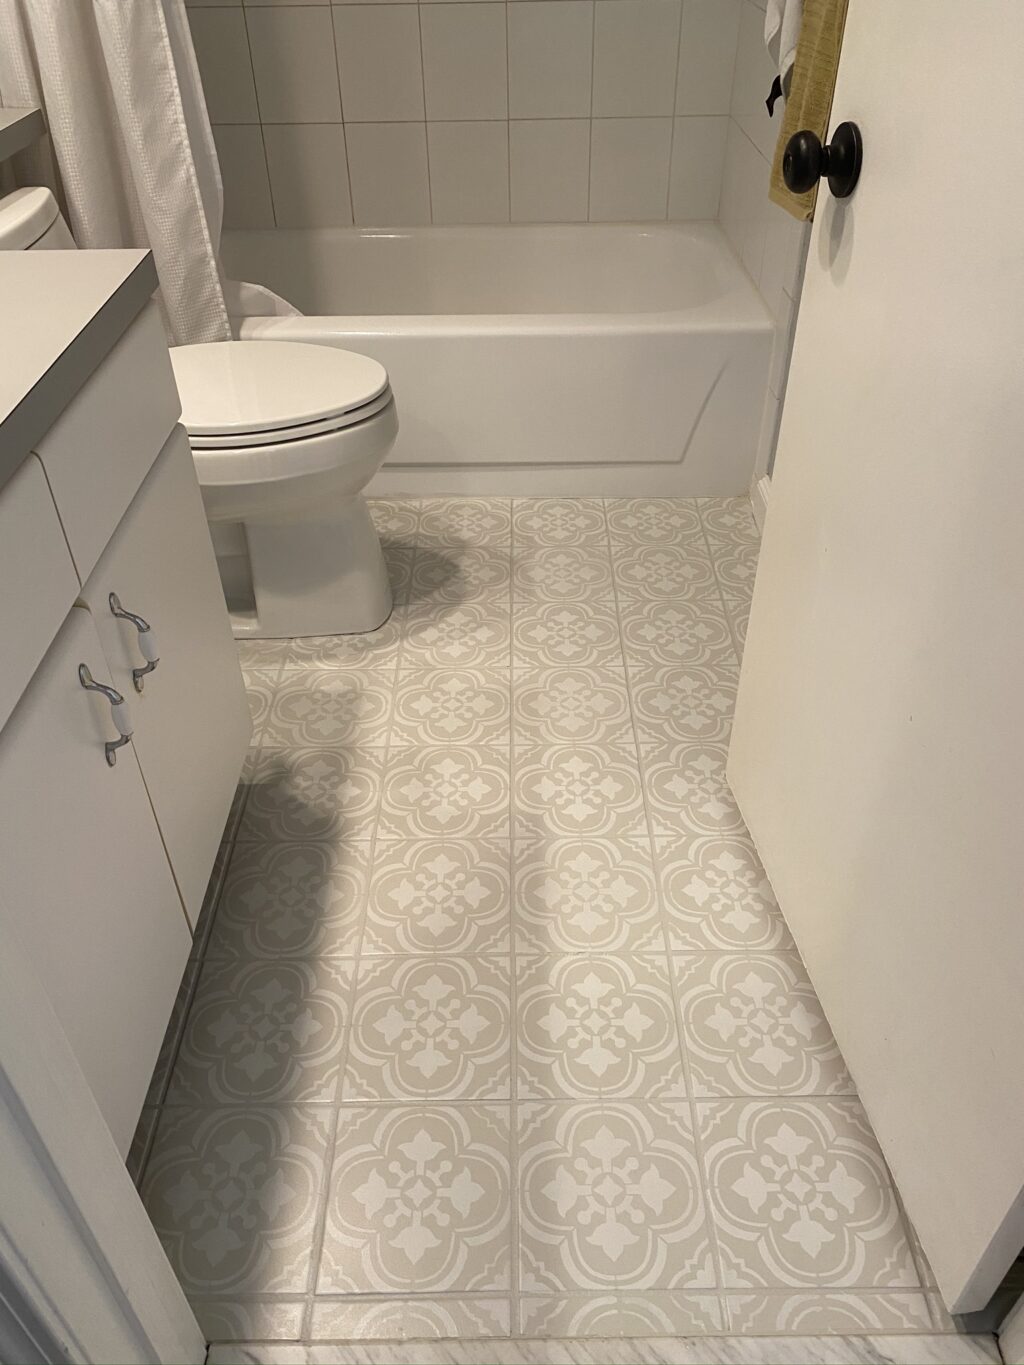 Painted floor tile in the bathroom